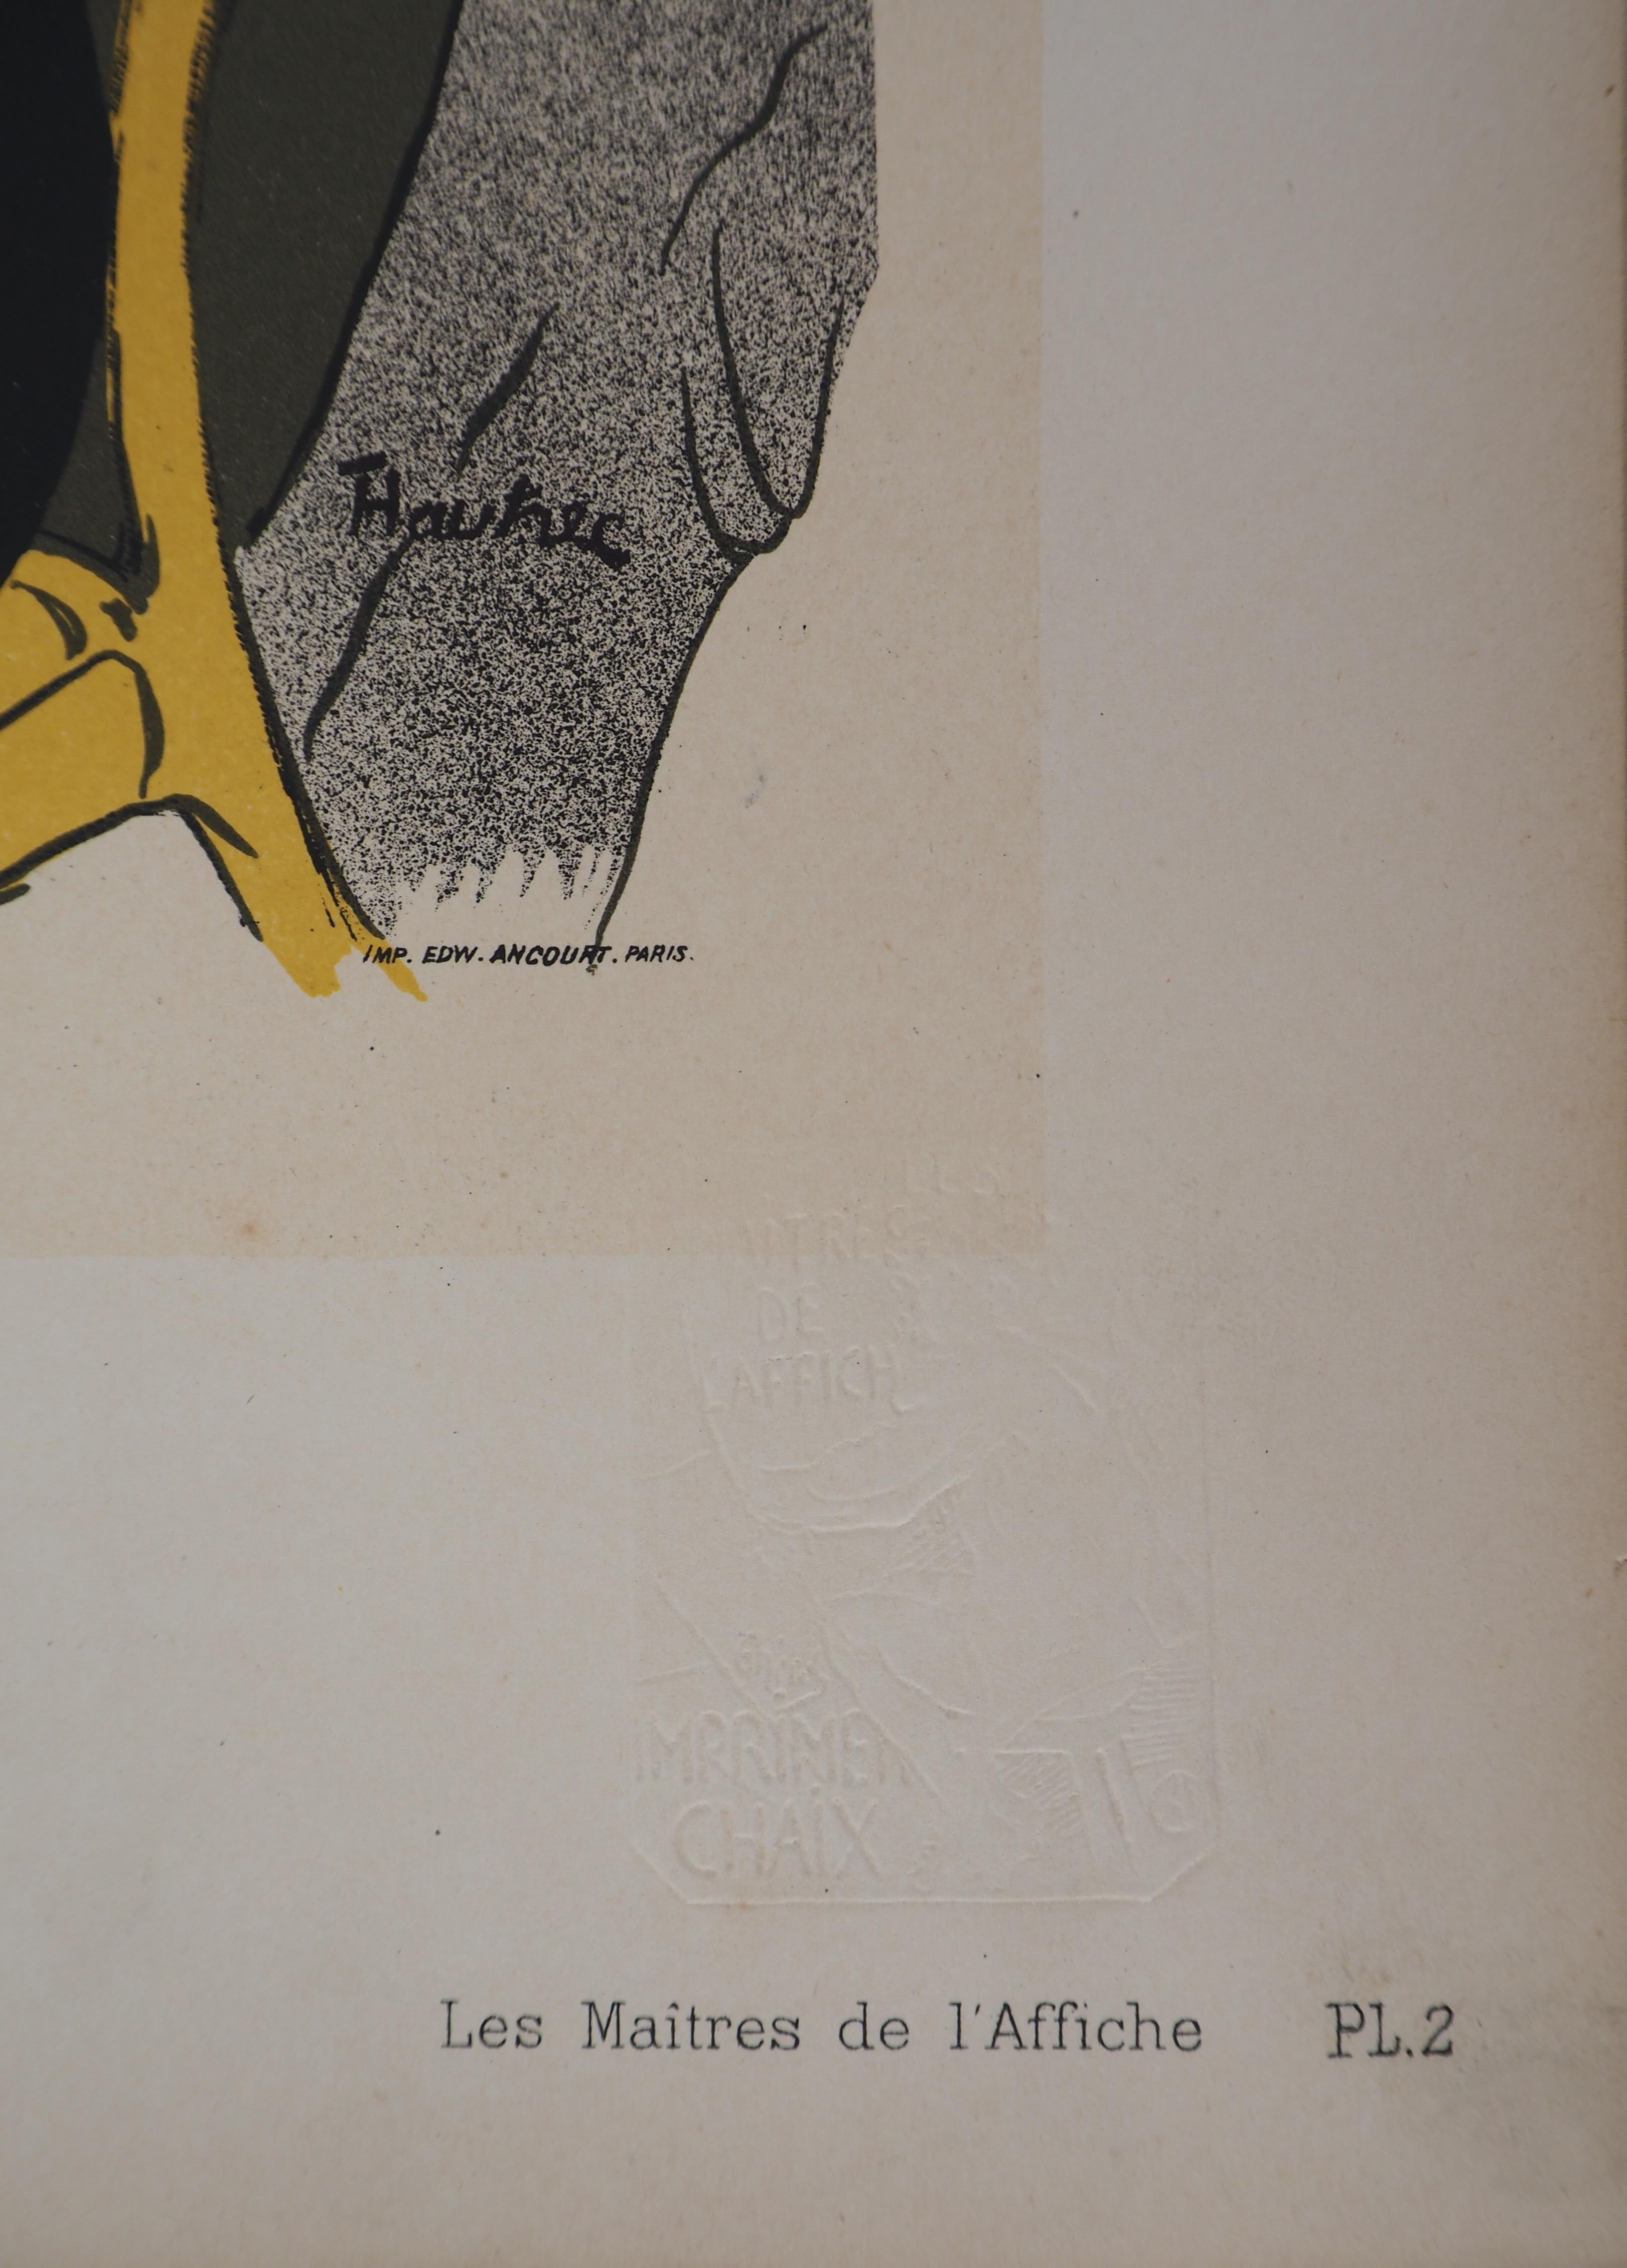 Divan Japonais - Lithograph (Les Maîtres de l'Affiche), 1895 2